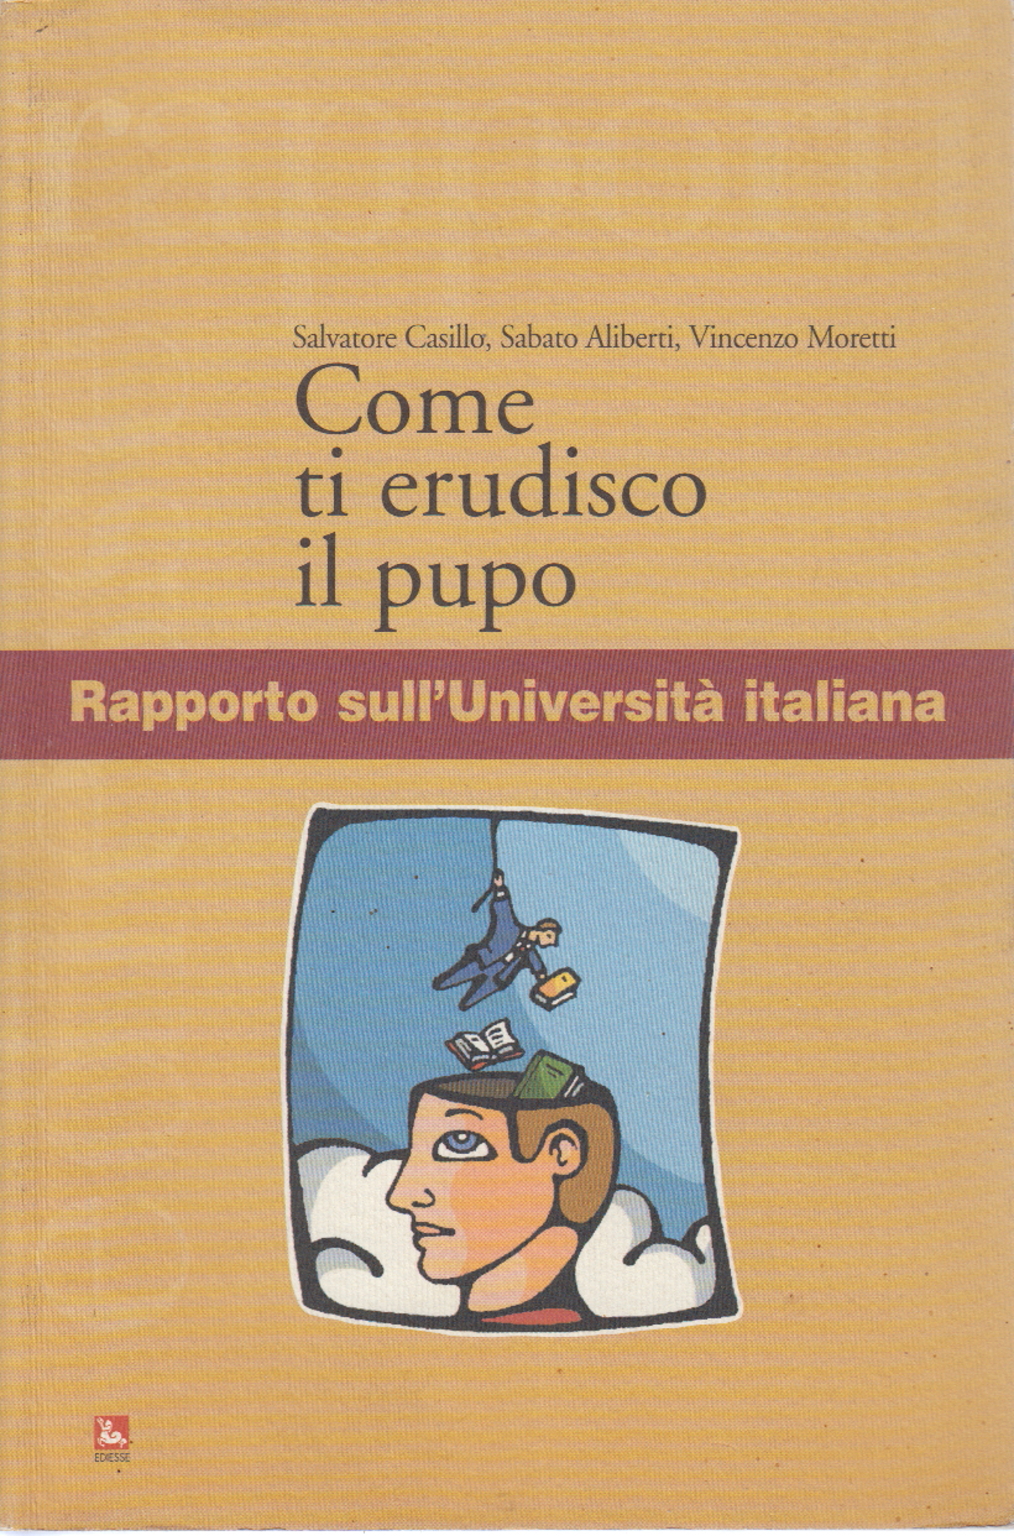 How I teach you the child, Salvatore Casillo Sabato Aliberti Vincenzo Moretti